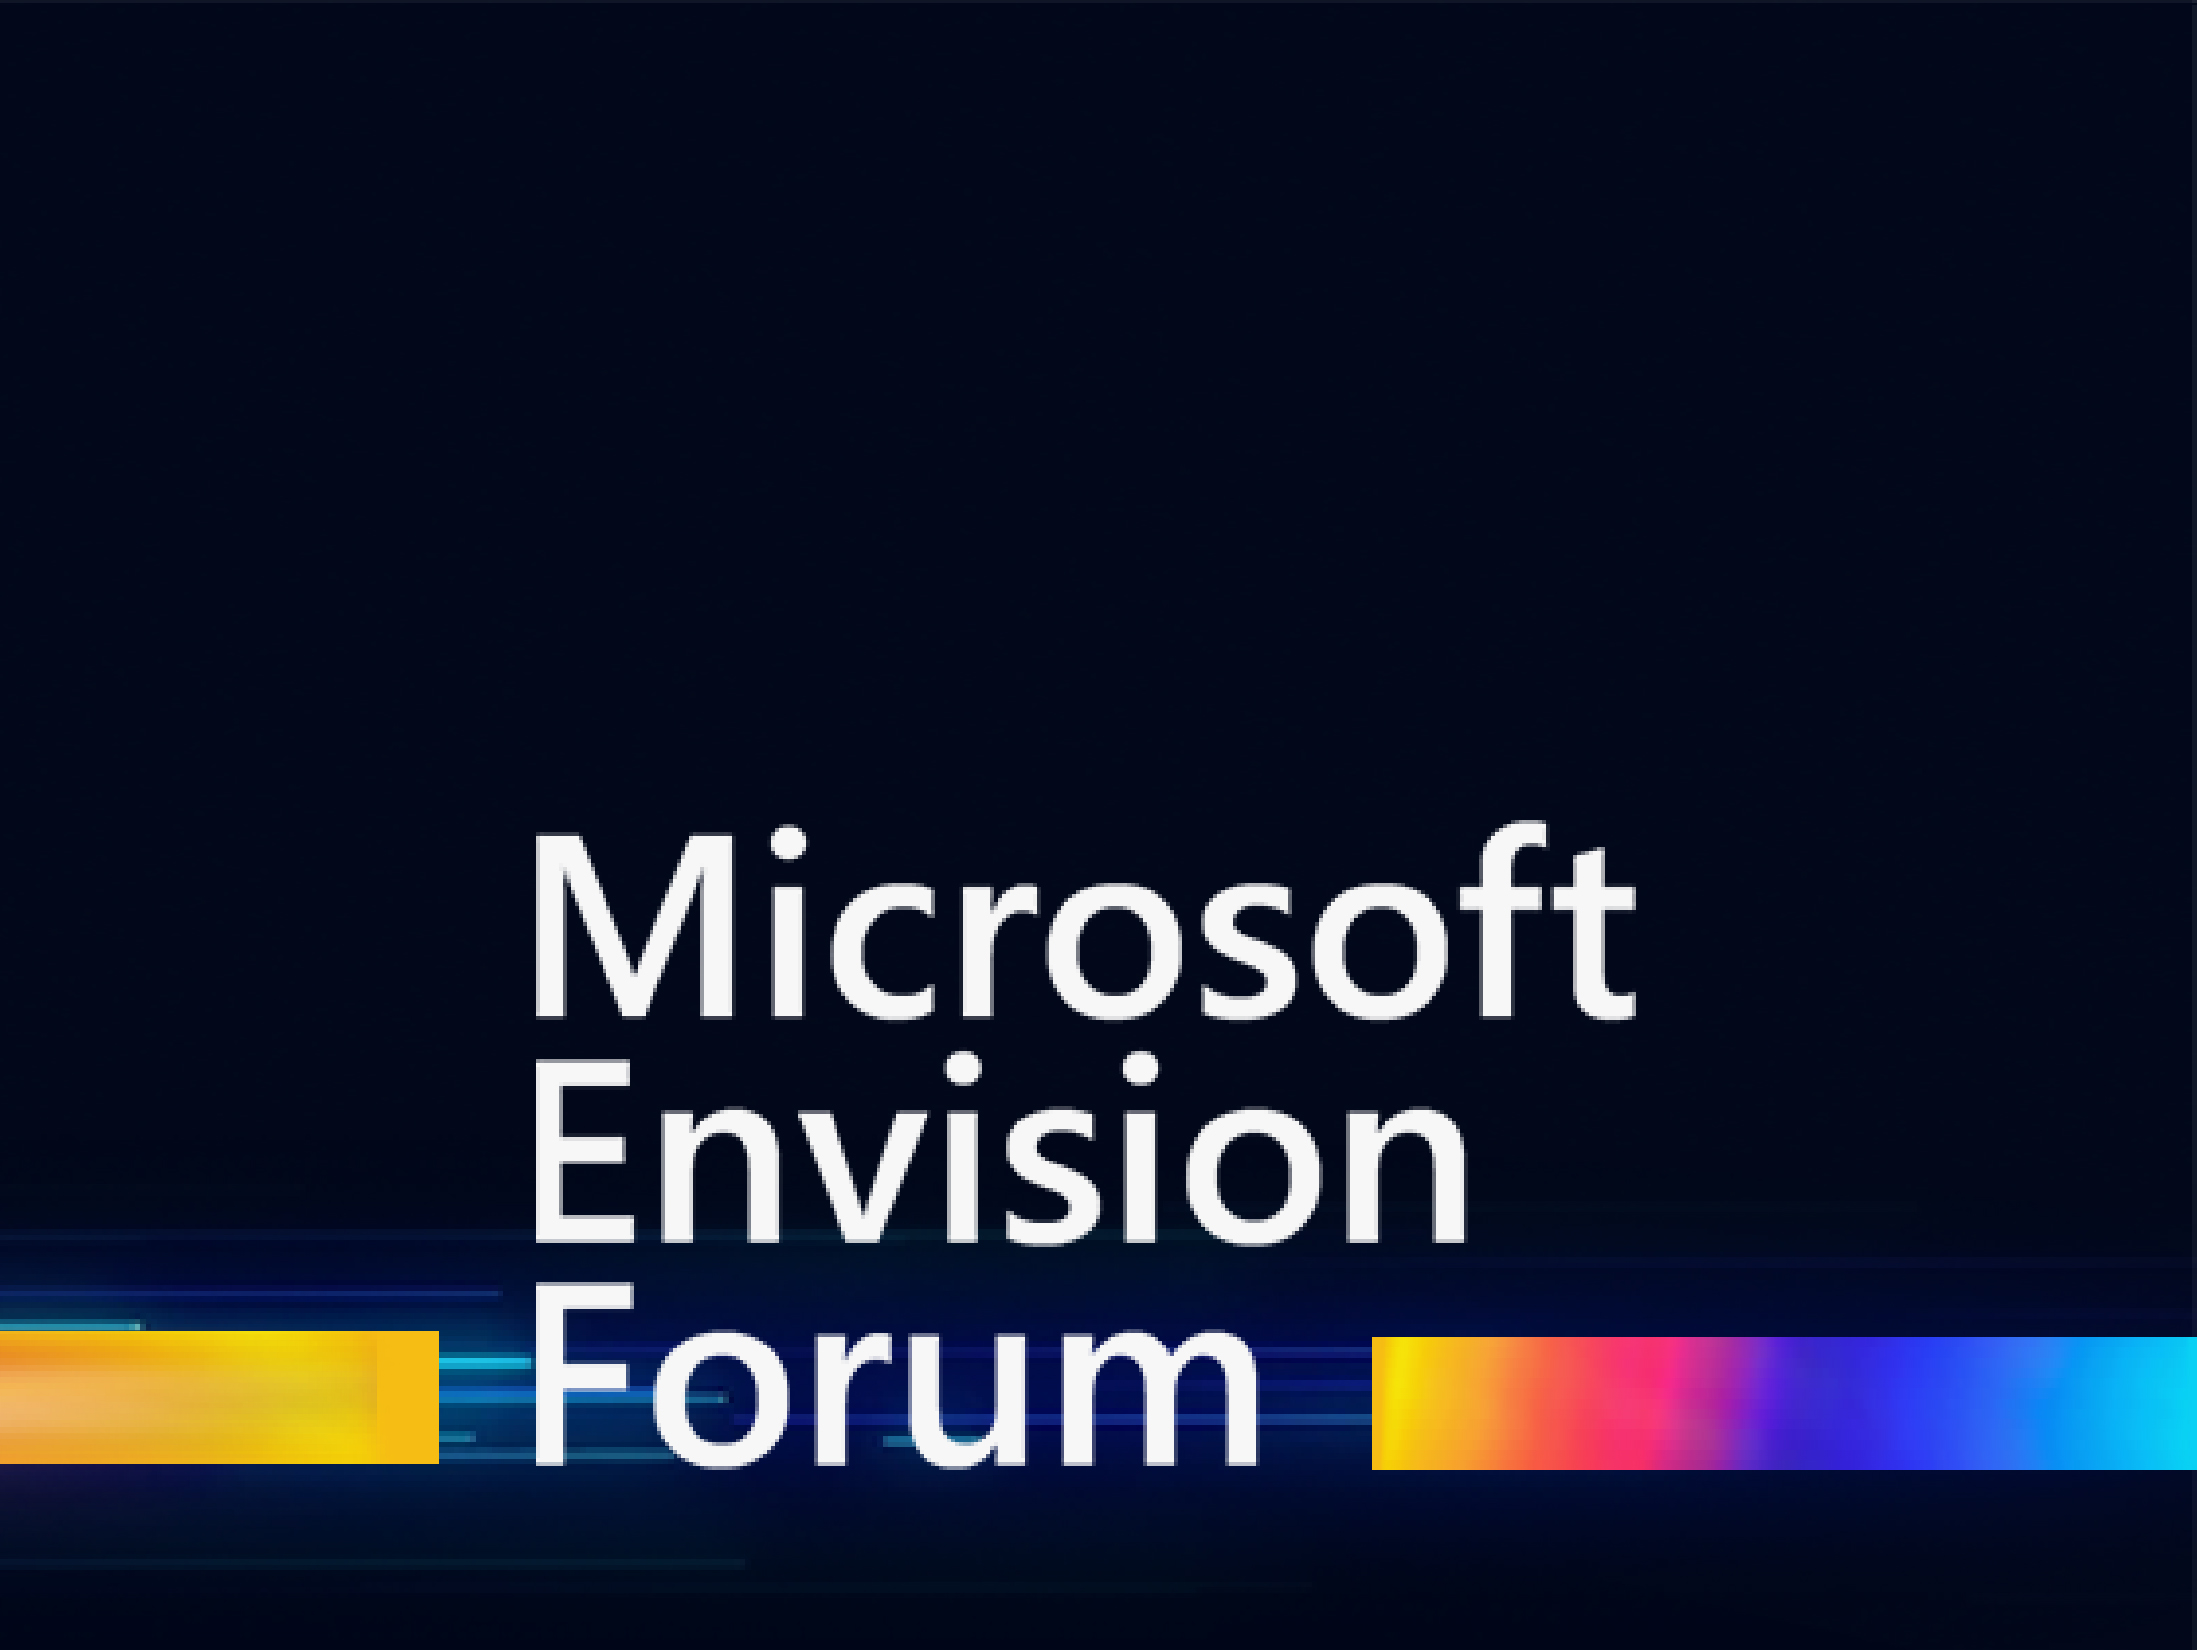 Nu rata Microsoft Envision Forum 2021, disponibil acum on-demand!